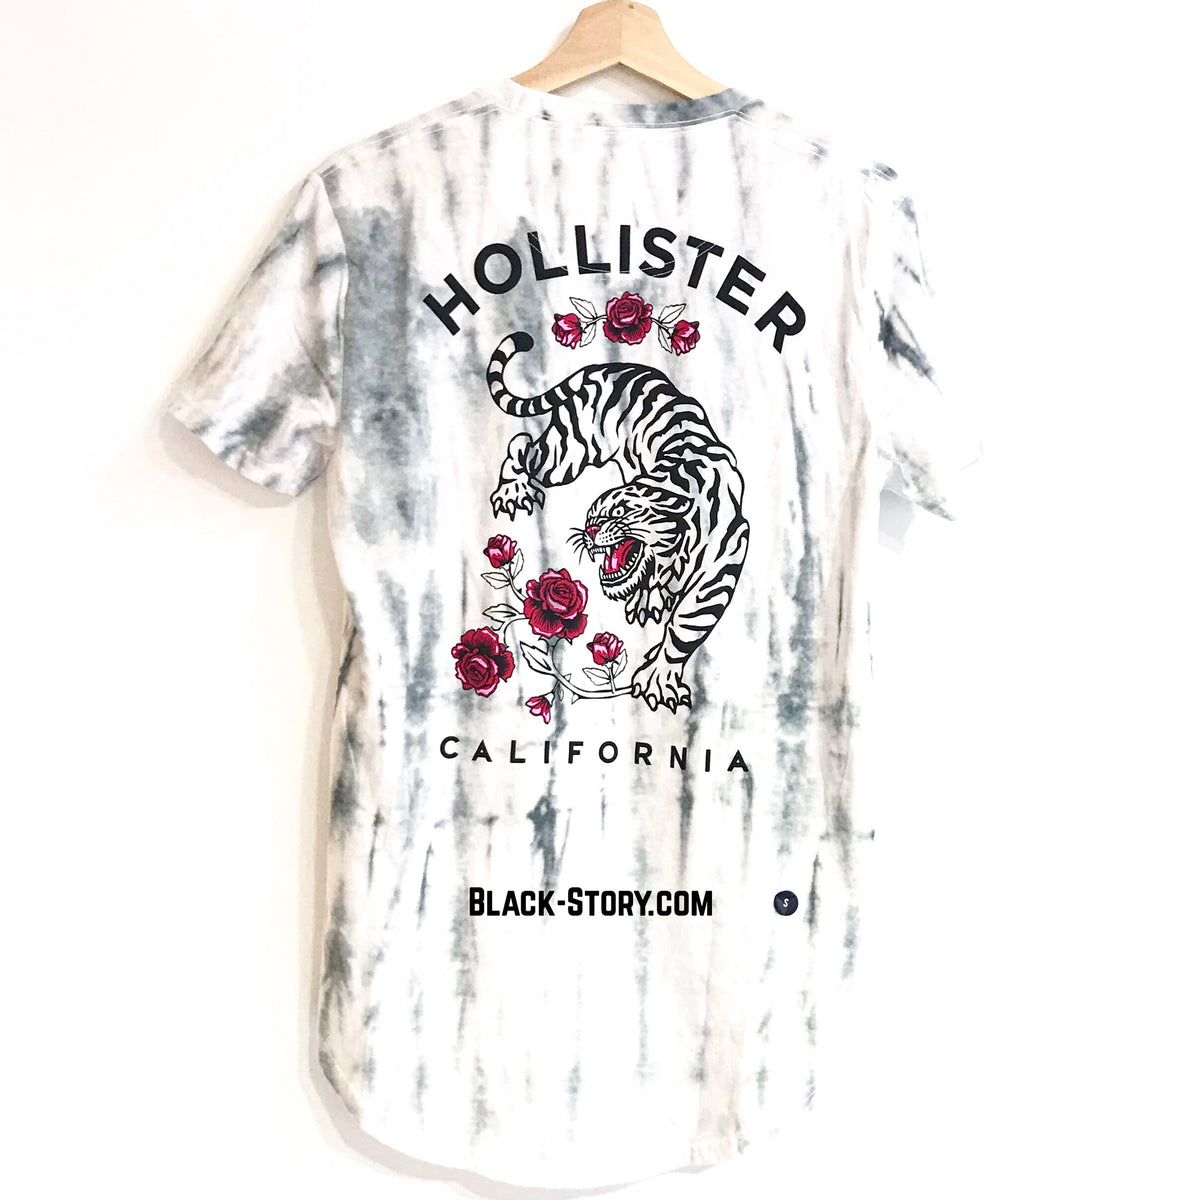 Hollister T Shirt Size Chart